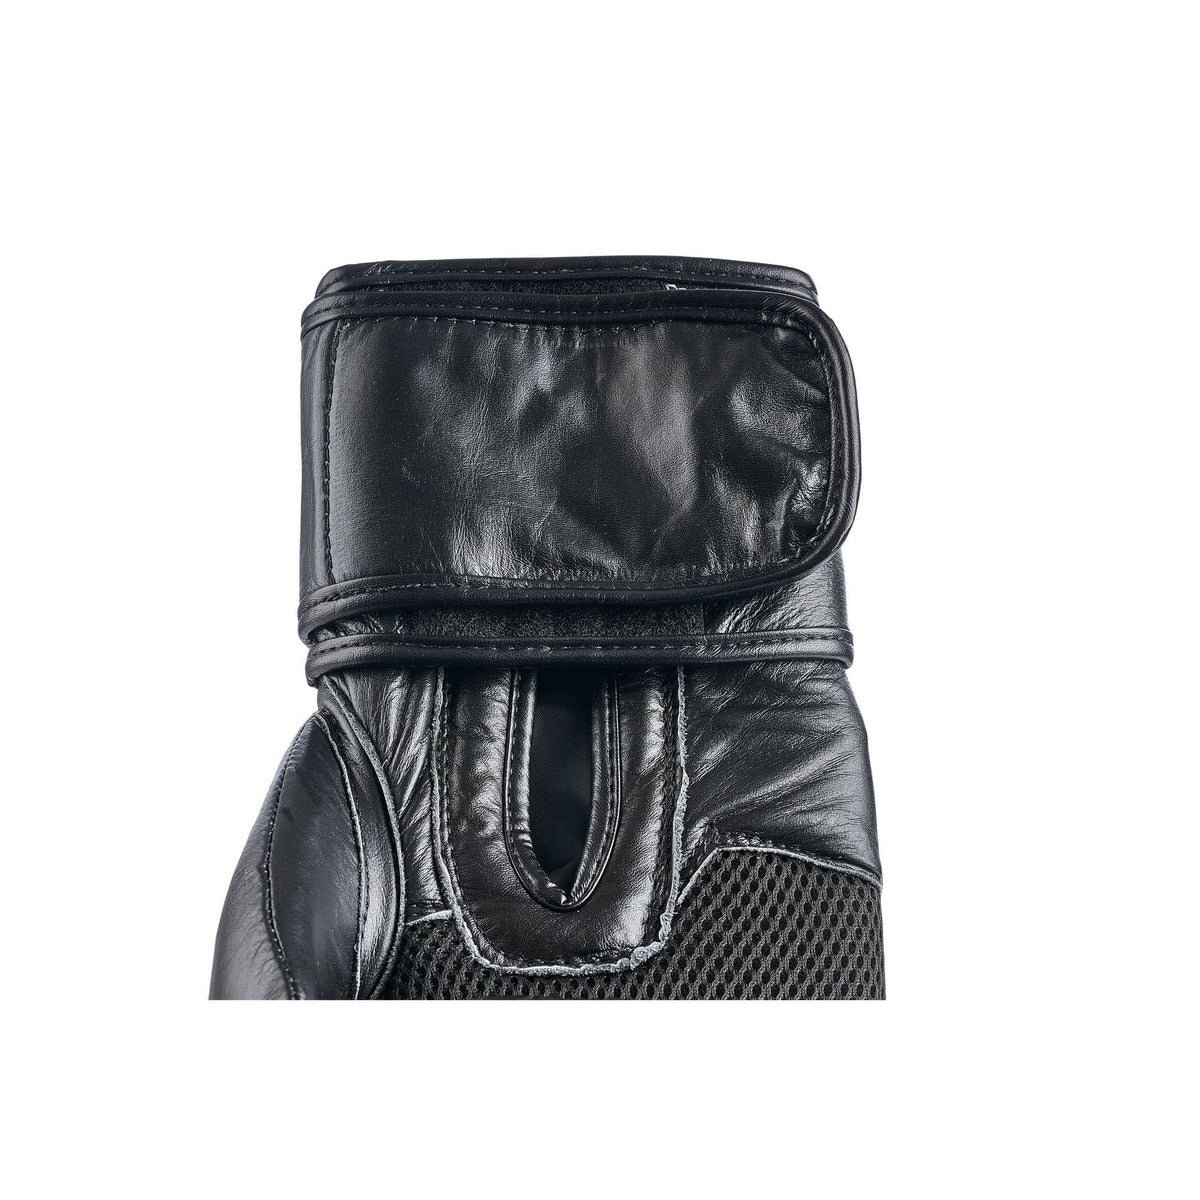 Klettverschluss Innenseite schwarze Boxhandschuhe aus Leder in einer Nahaufnahme 